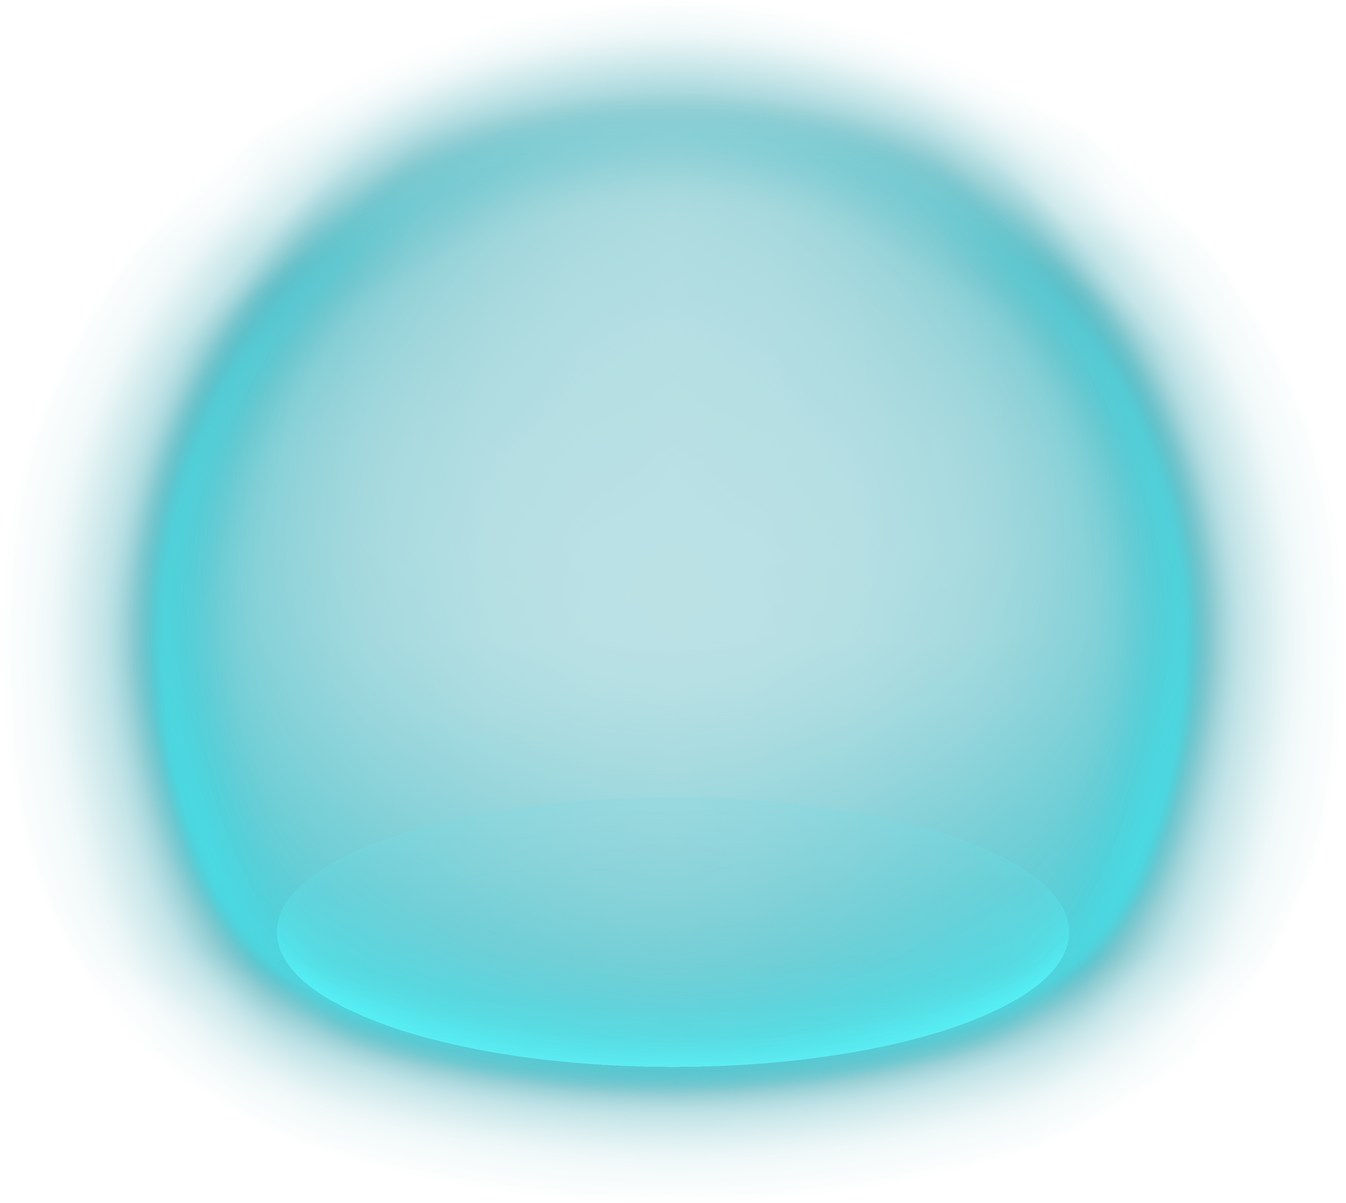 Glowing blue bubble